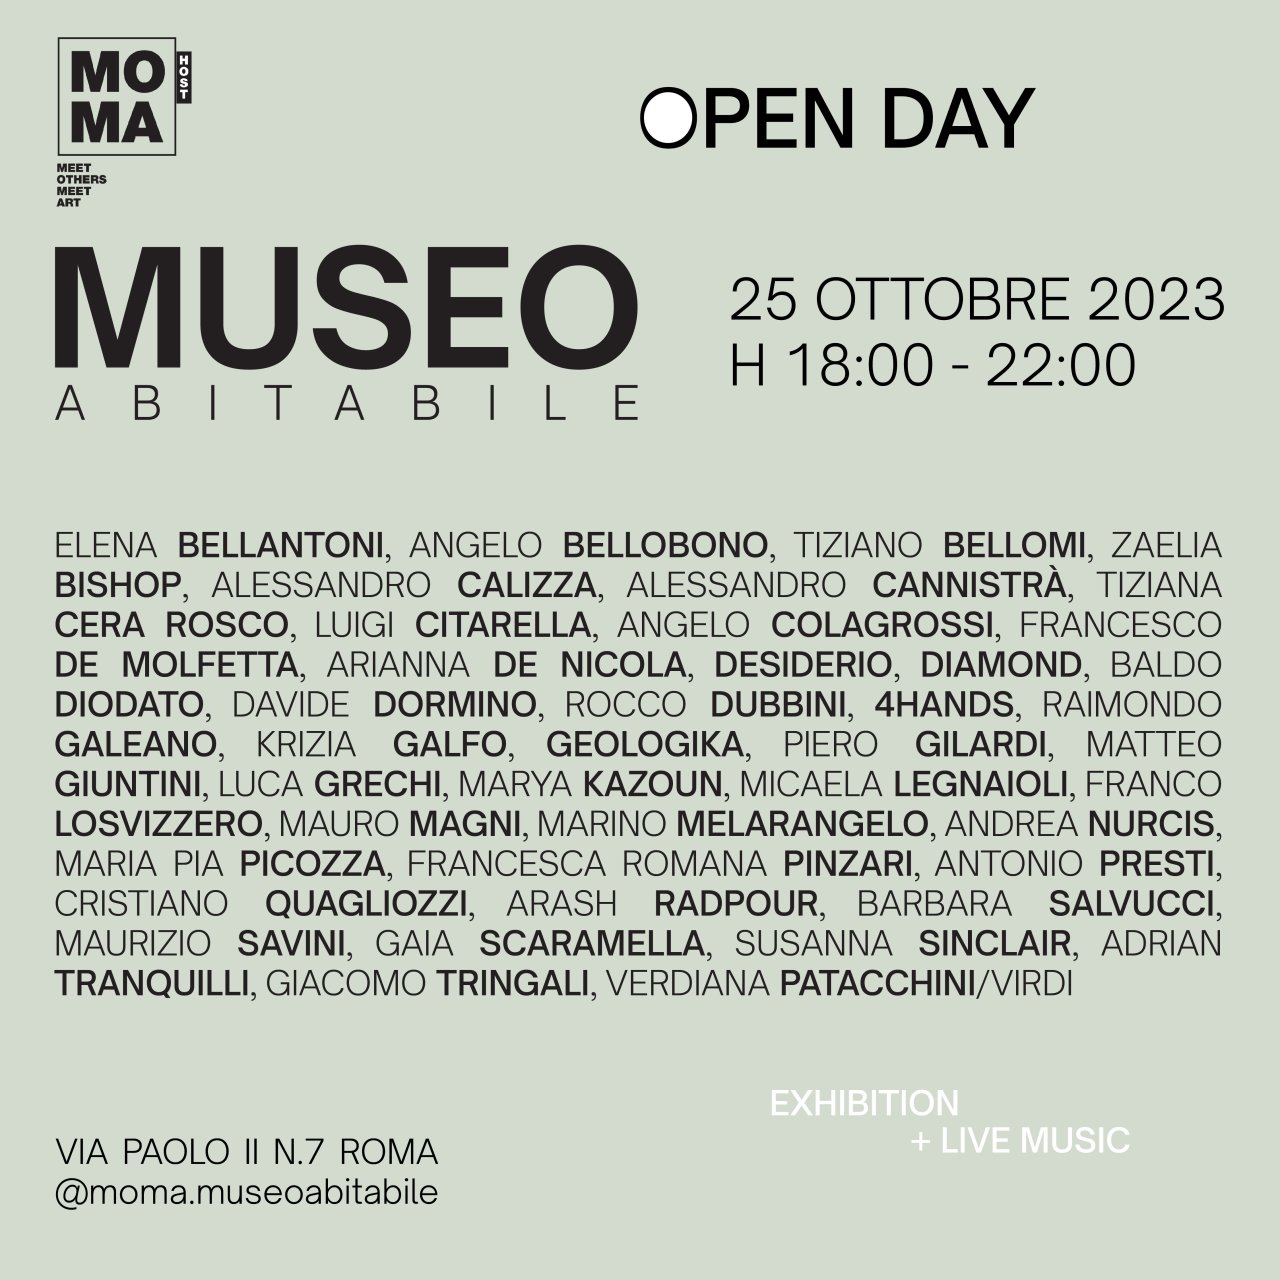 INVITO open day 2023 MUSEO ABITABILE